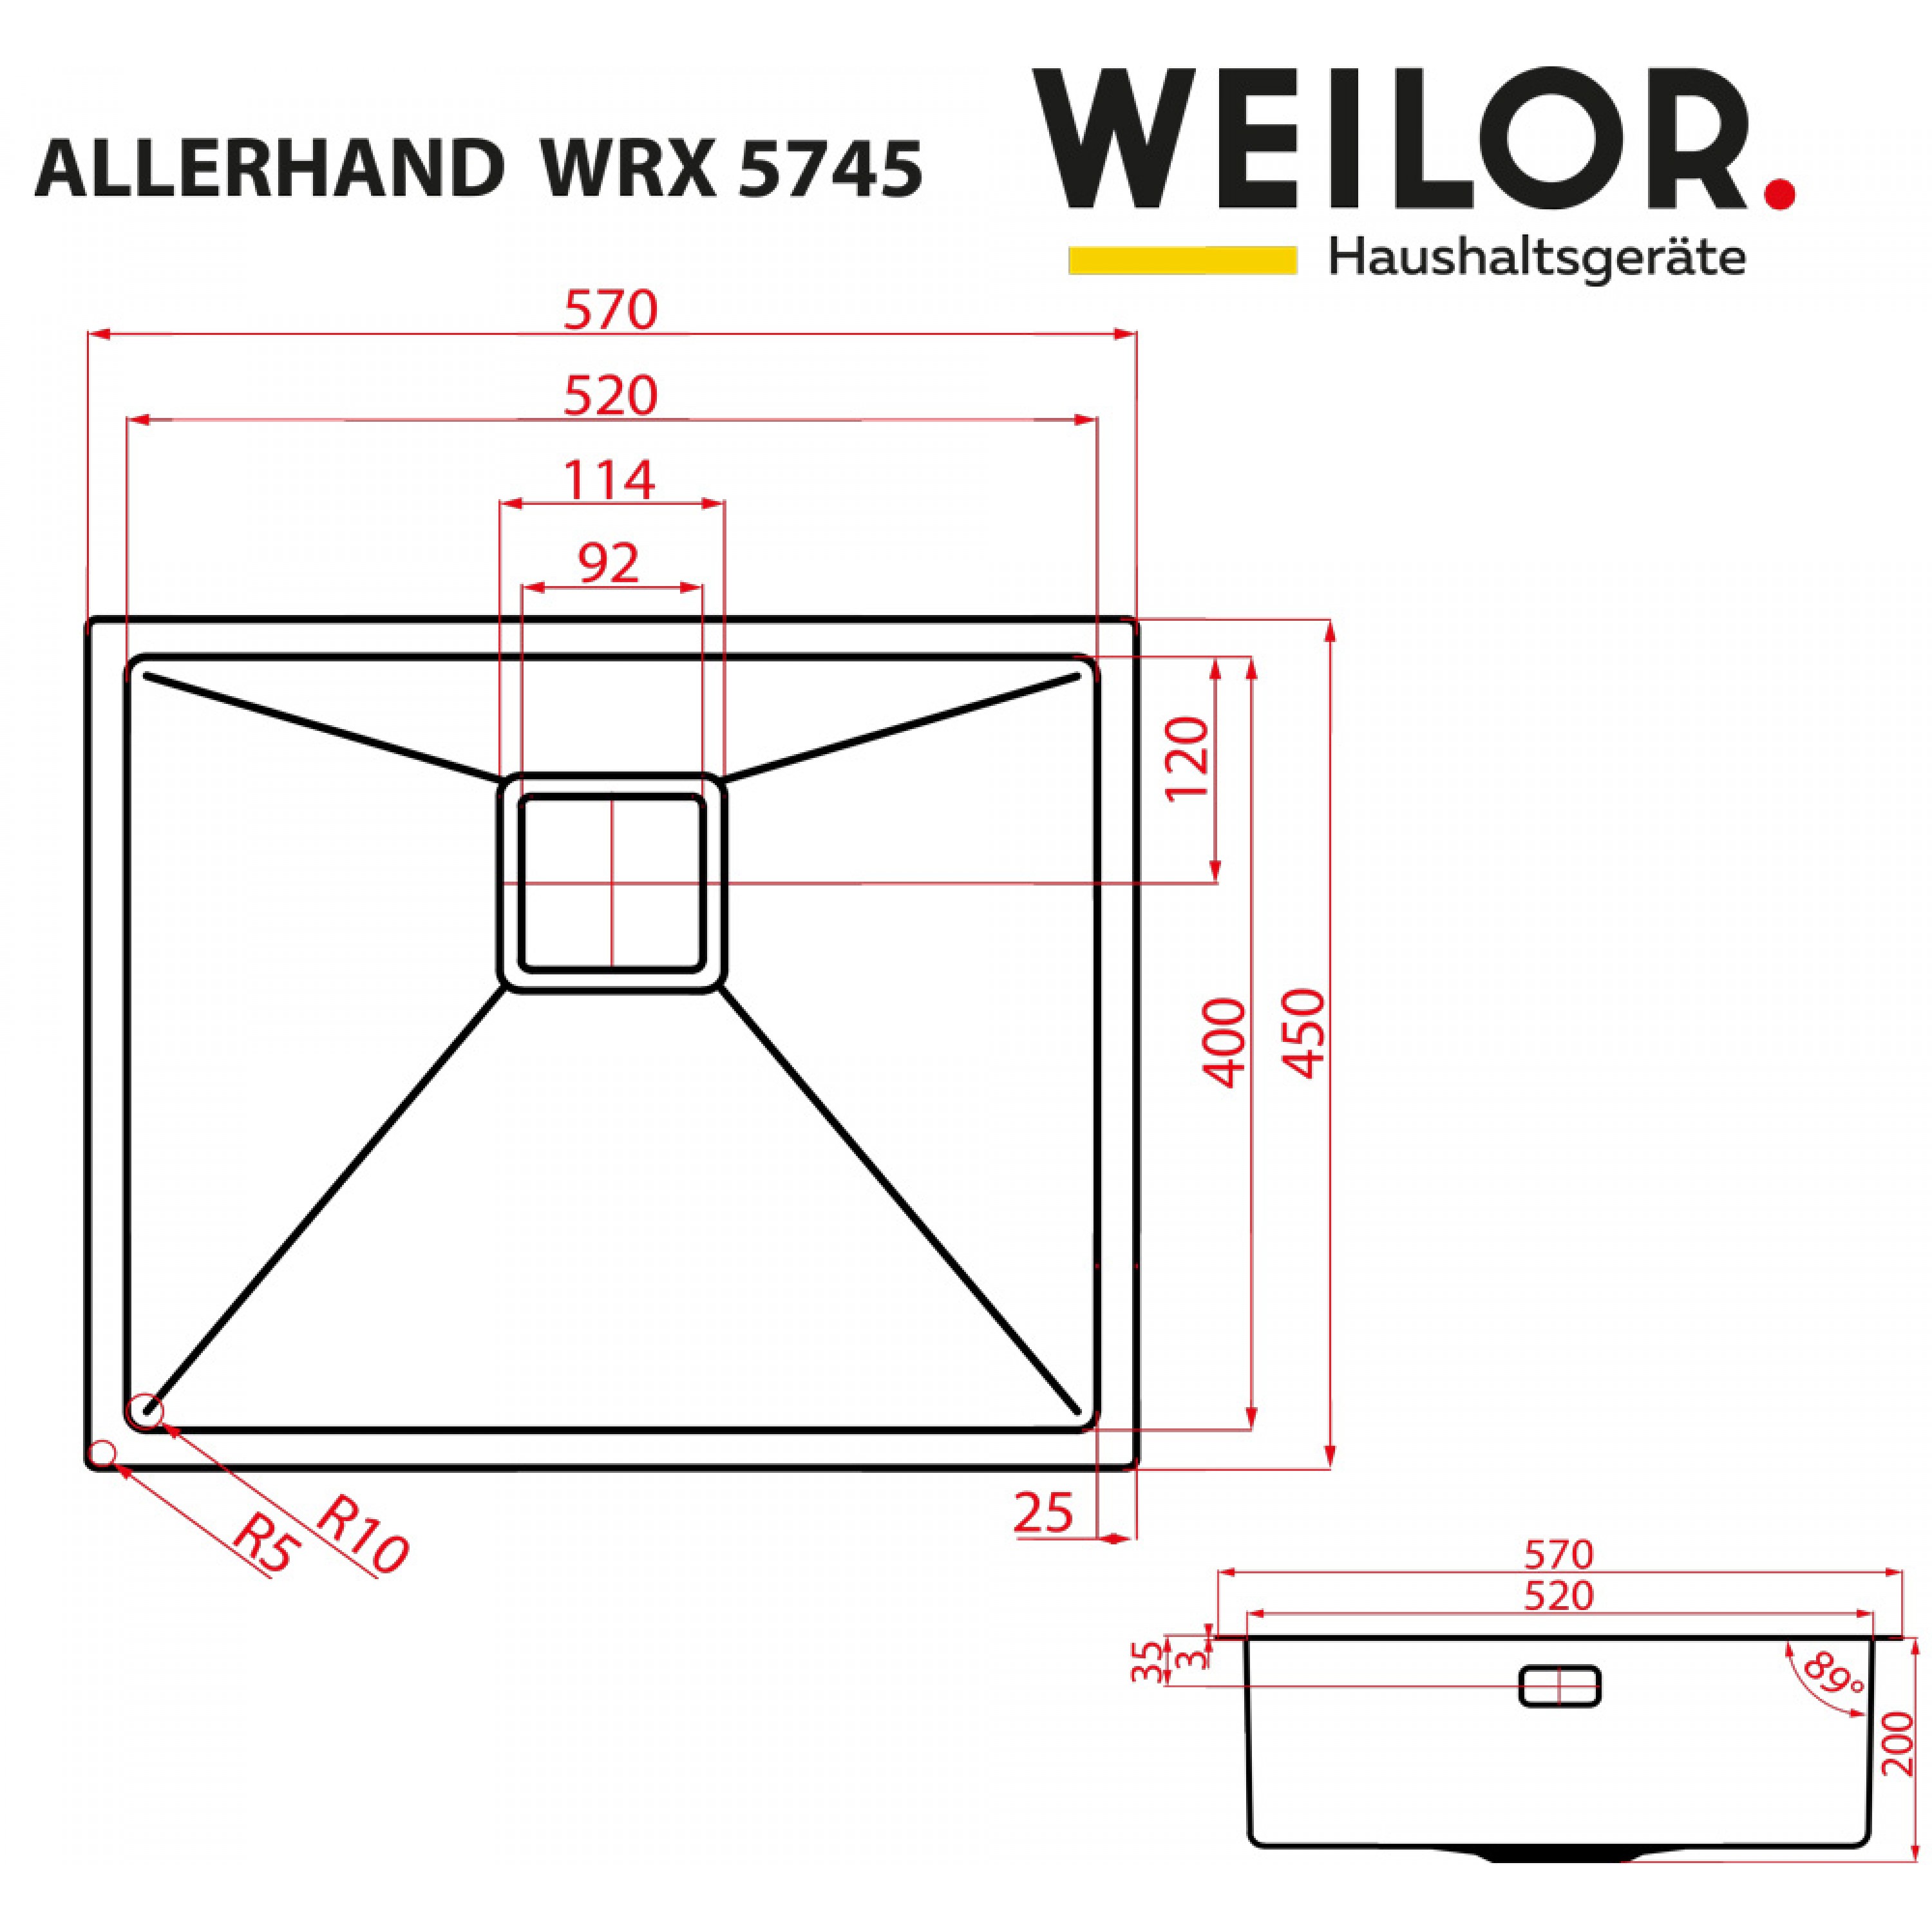 Weilor ALLERHAND WRX 5745 Габаритные размеры